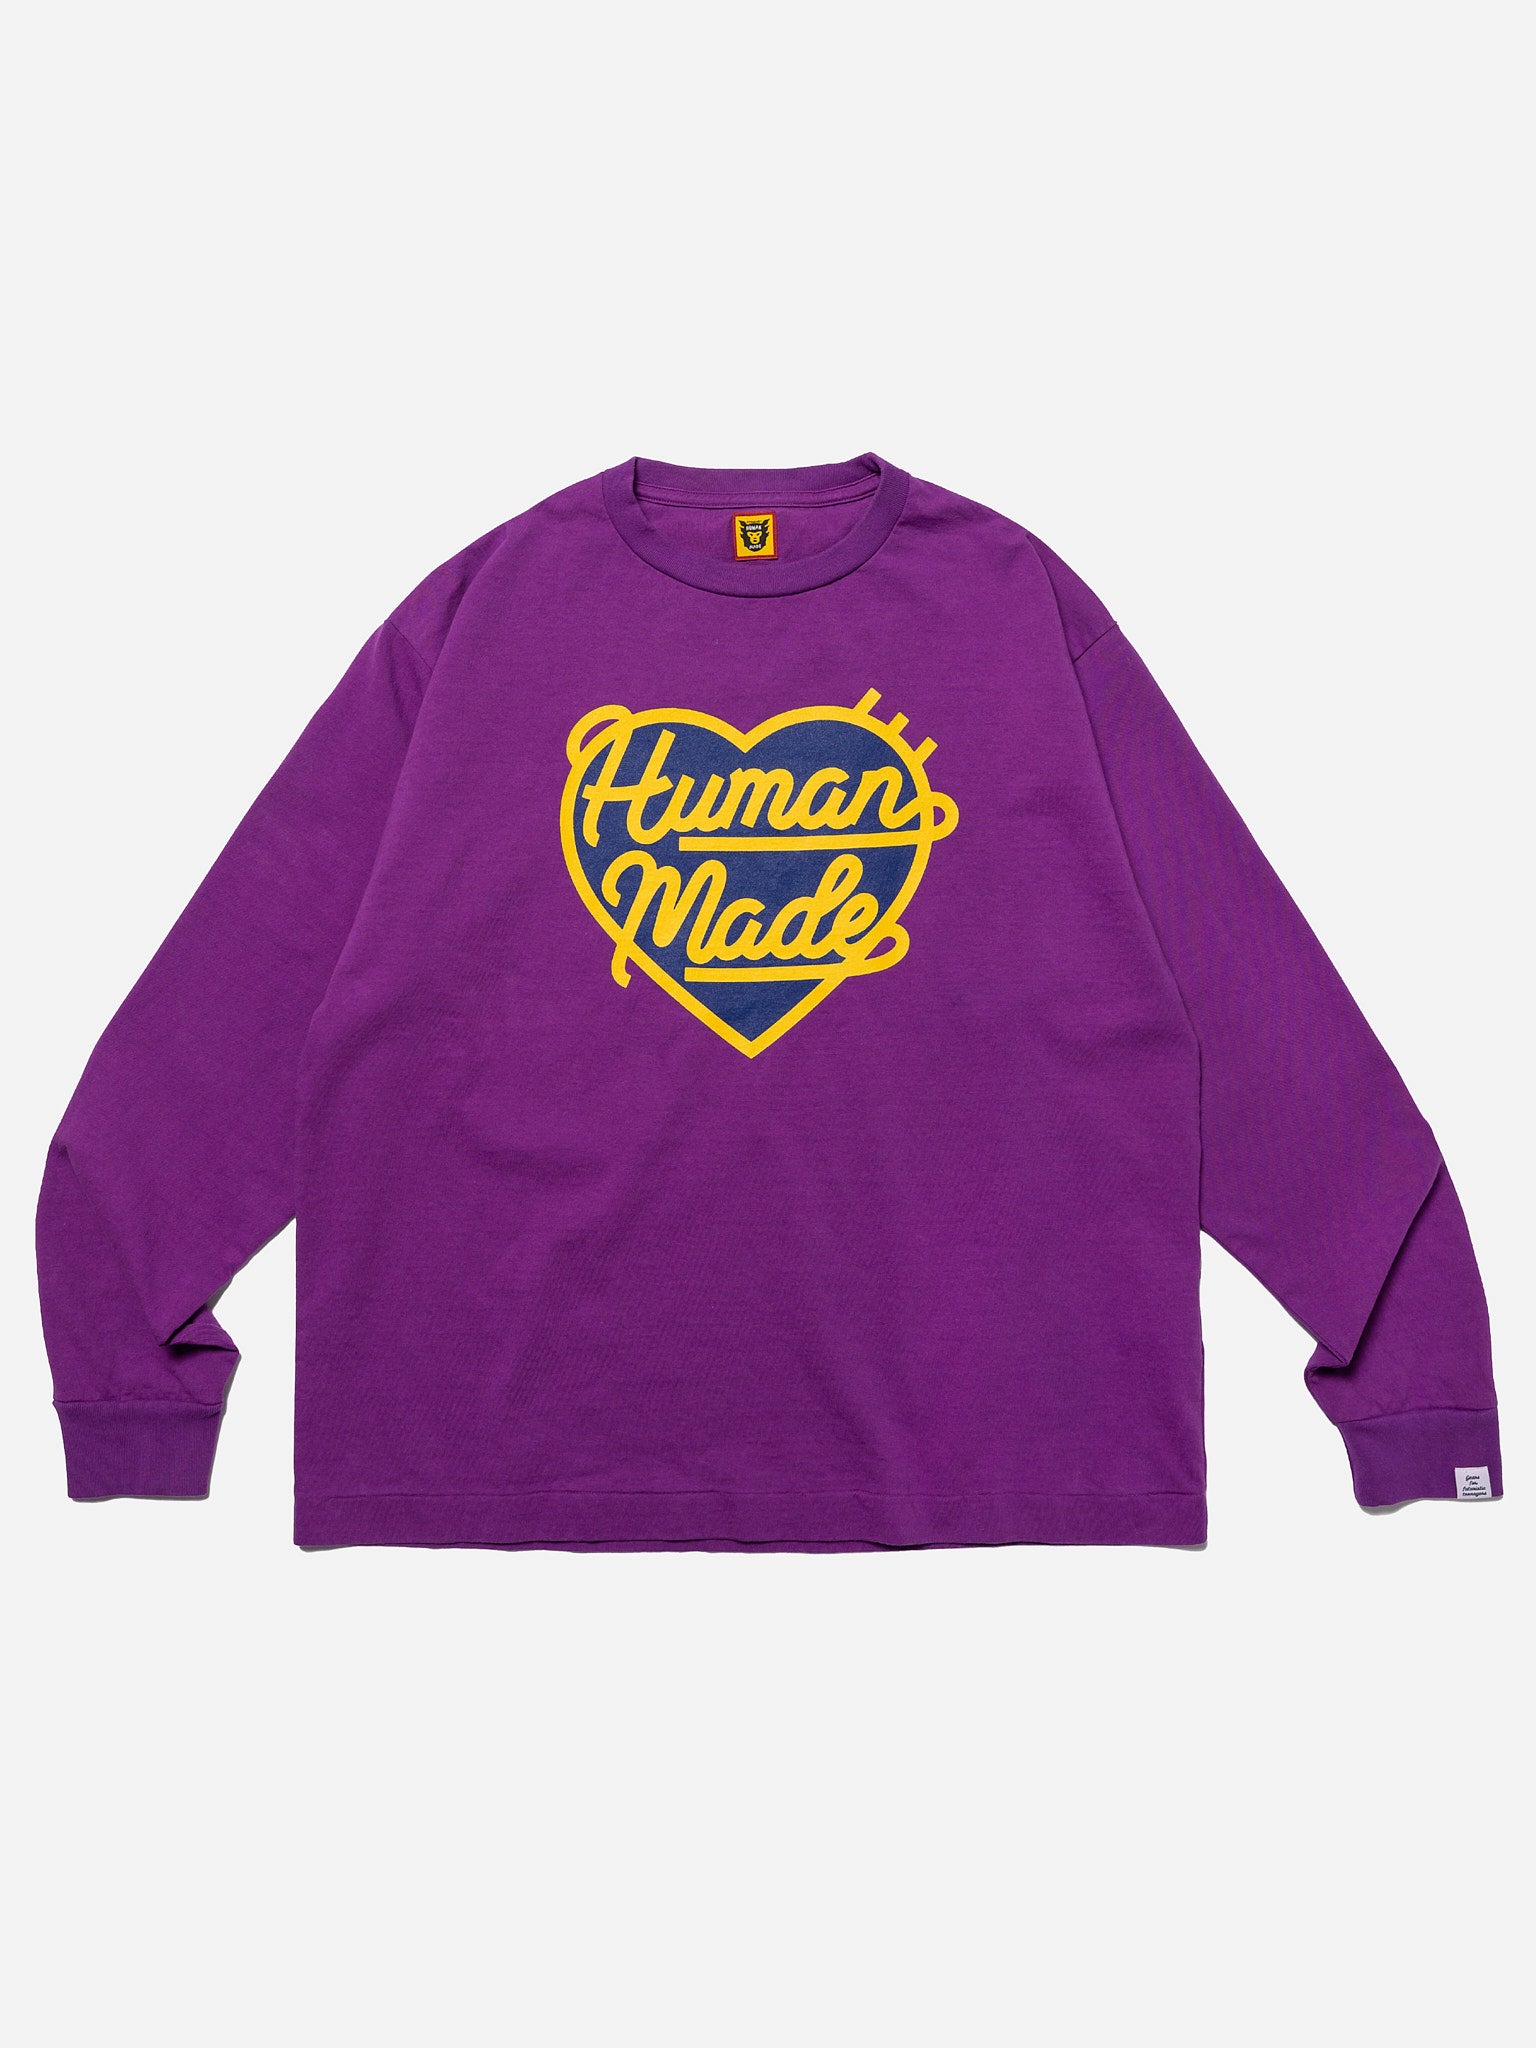 humanmad GRAPHIC L/S T-SHIRT #1 長袖Tシャツ L - トップス